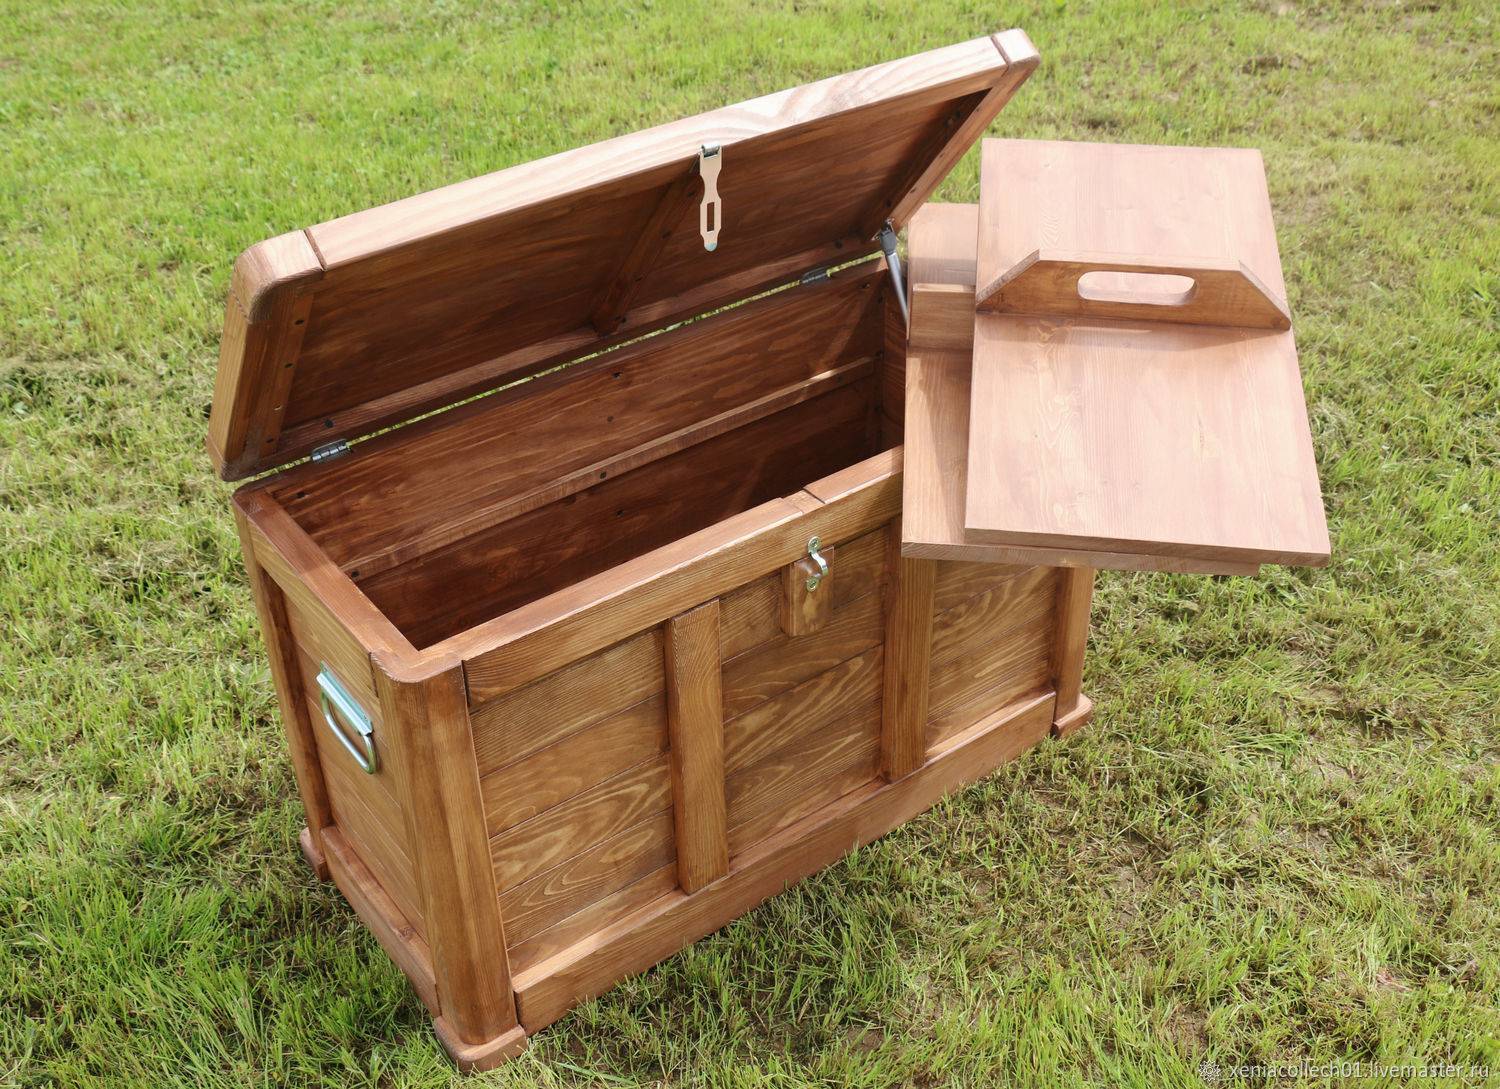 Практичный ящик для компоста на даче своими руками - чертежи с фото, варианты из поддонов, досок и других подручных материалов